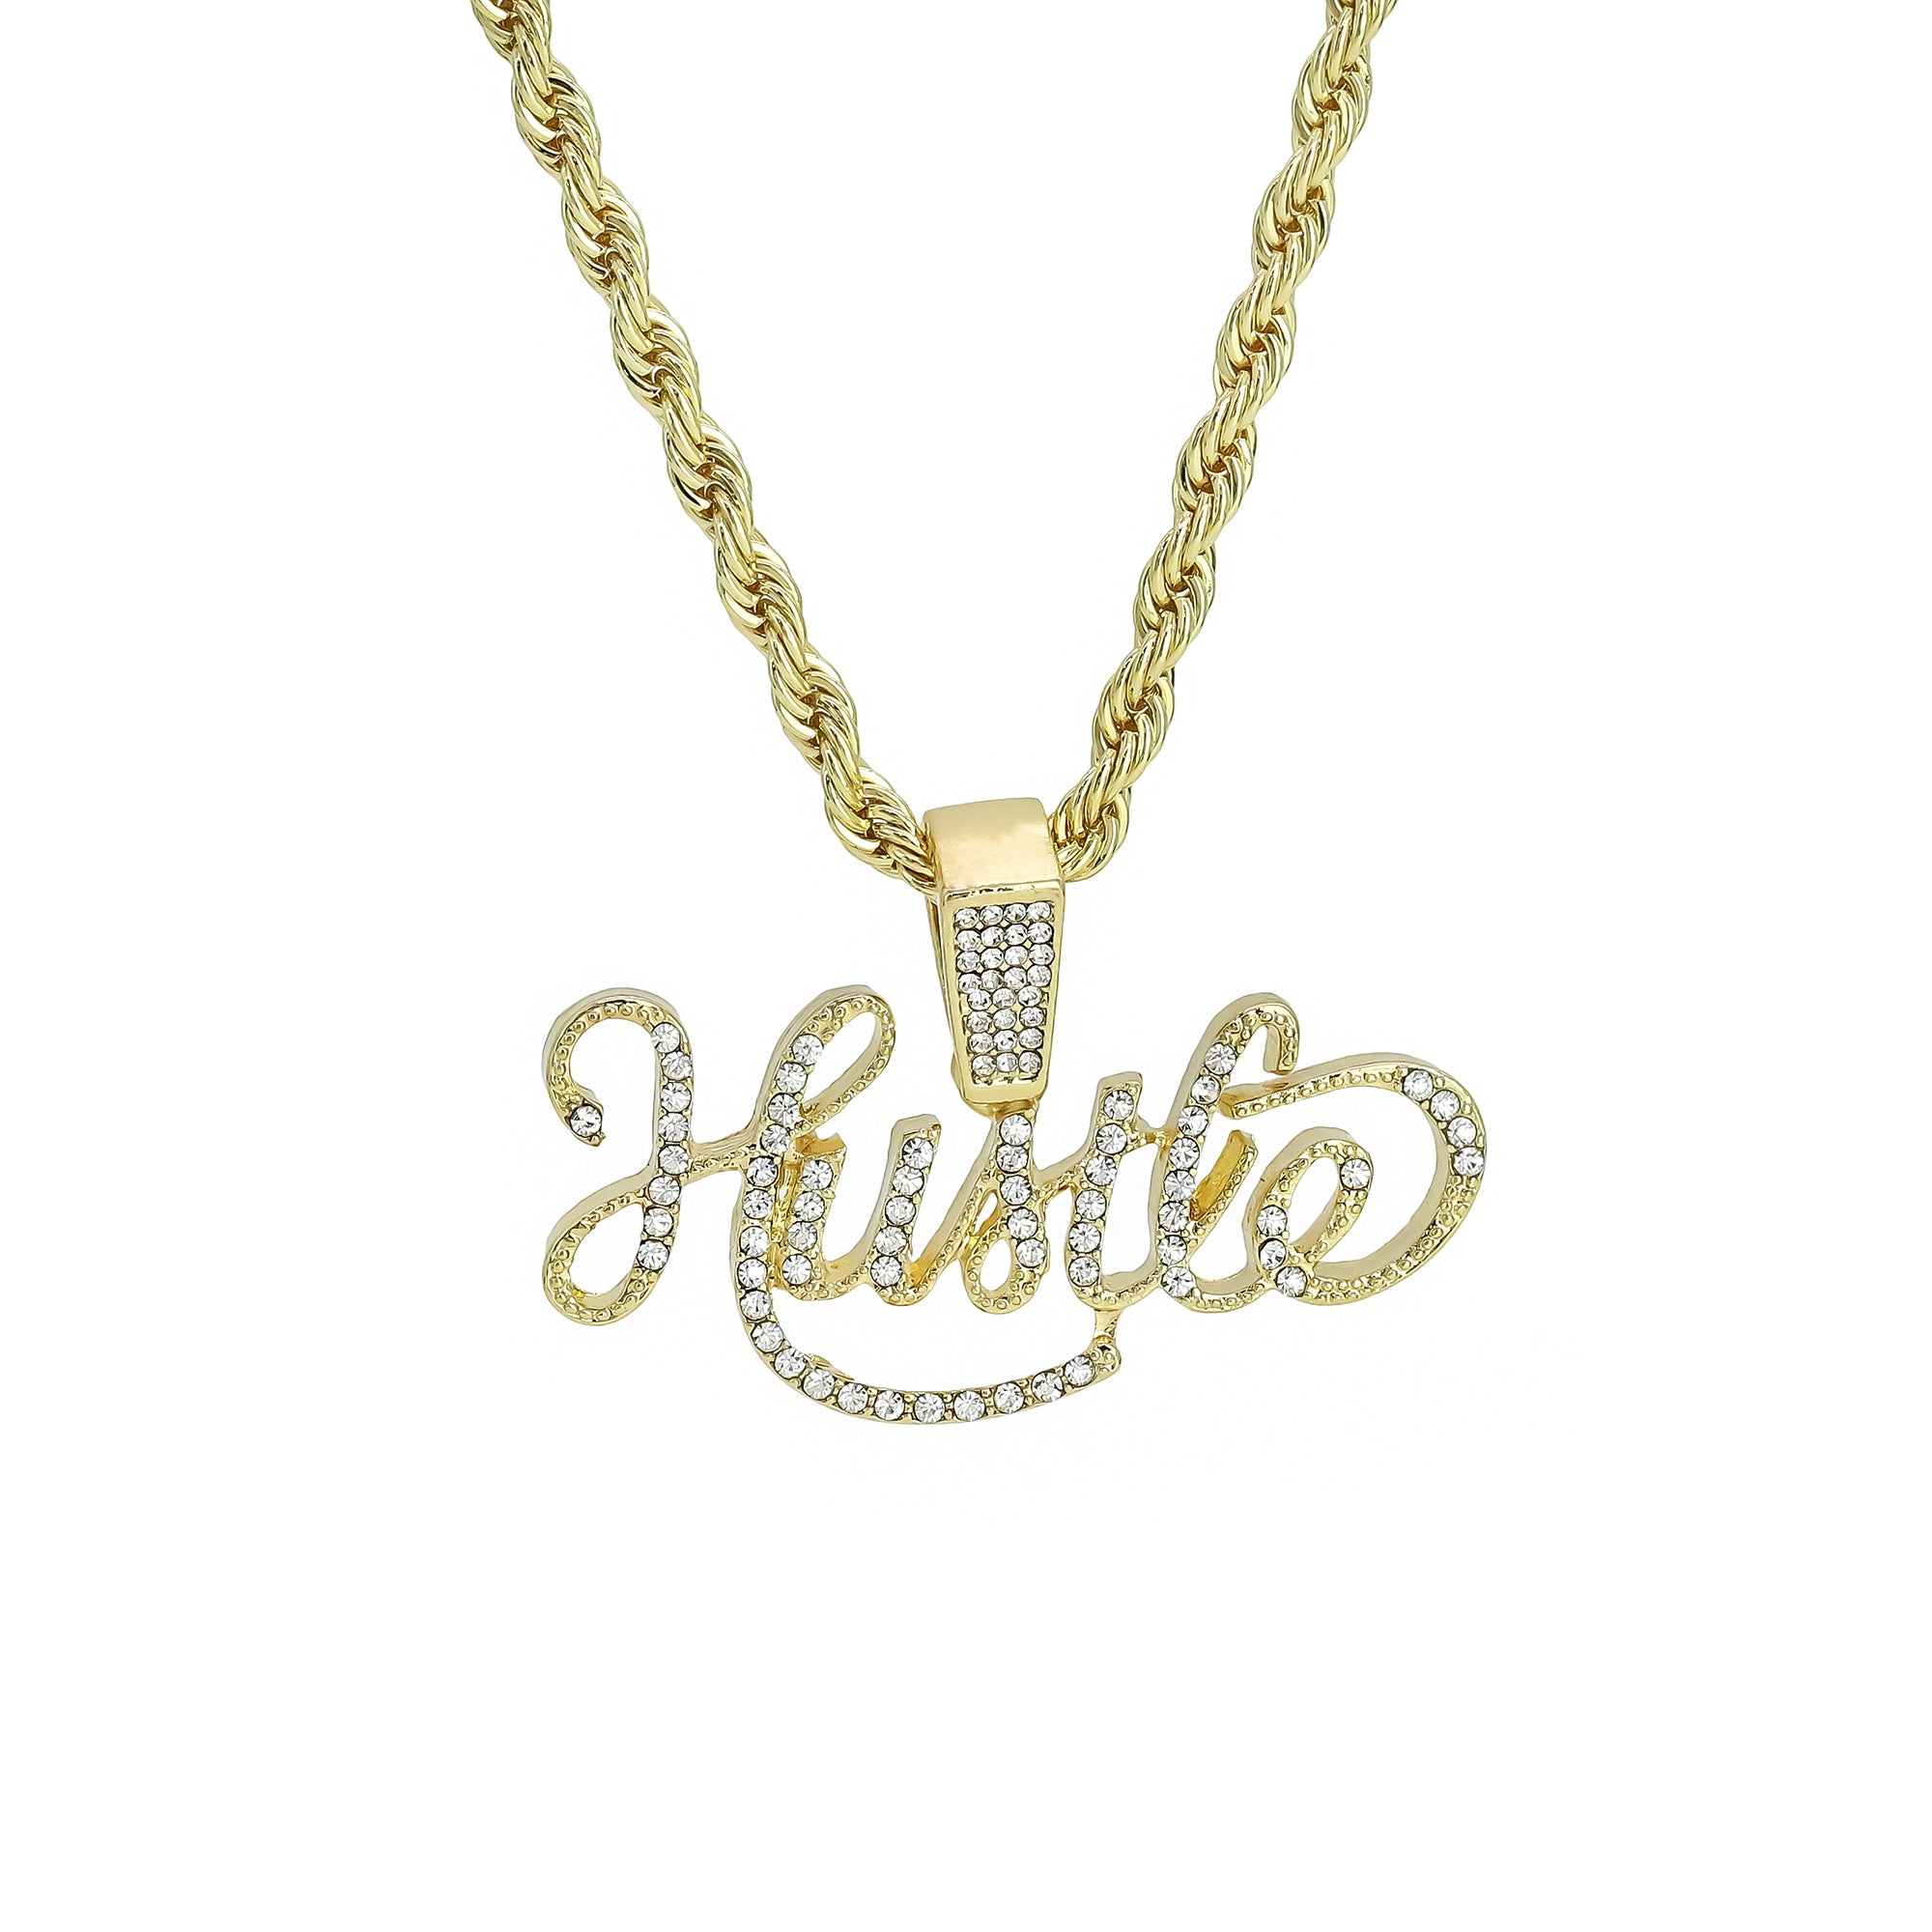 Hustle Pendant Rope Chain Men's Hip Hop 18k Cz Jewelry Necklace